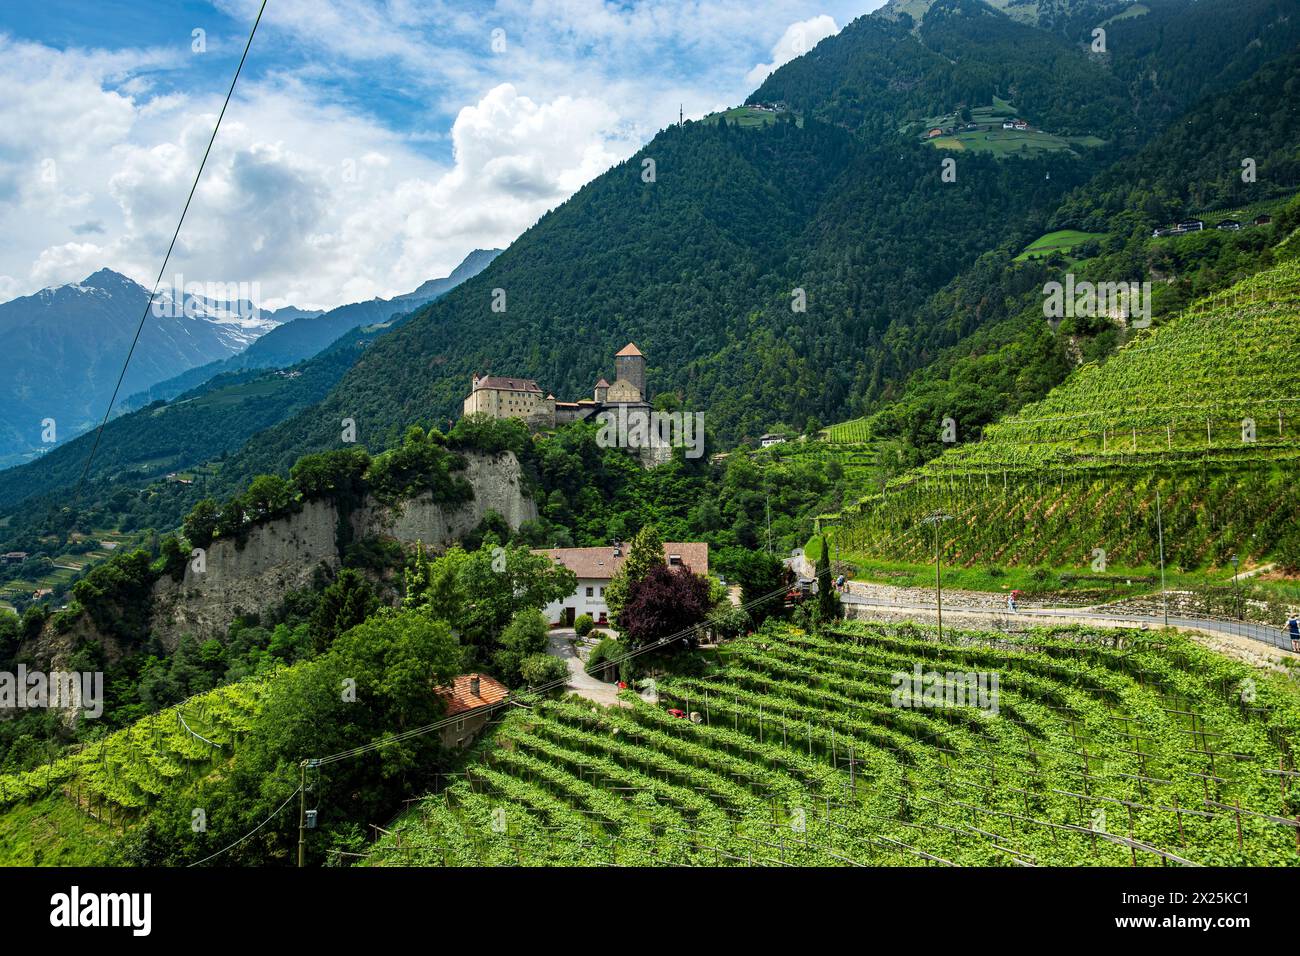 Schloss Tirol vom Dorf Tirol aus gesehen, mittelalterliche Ahnenburg der Grafen von Tirol bei Meran, Burgraviato, Südtirol, Italien. Stockfoto